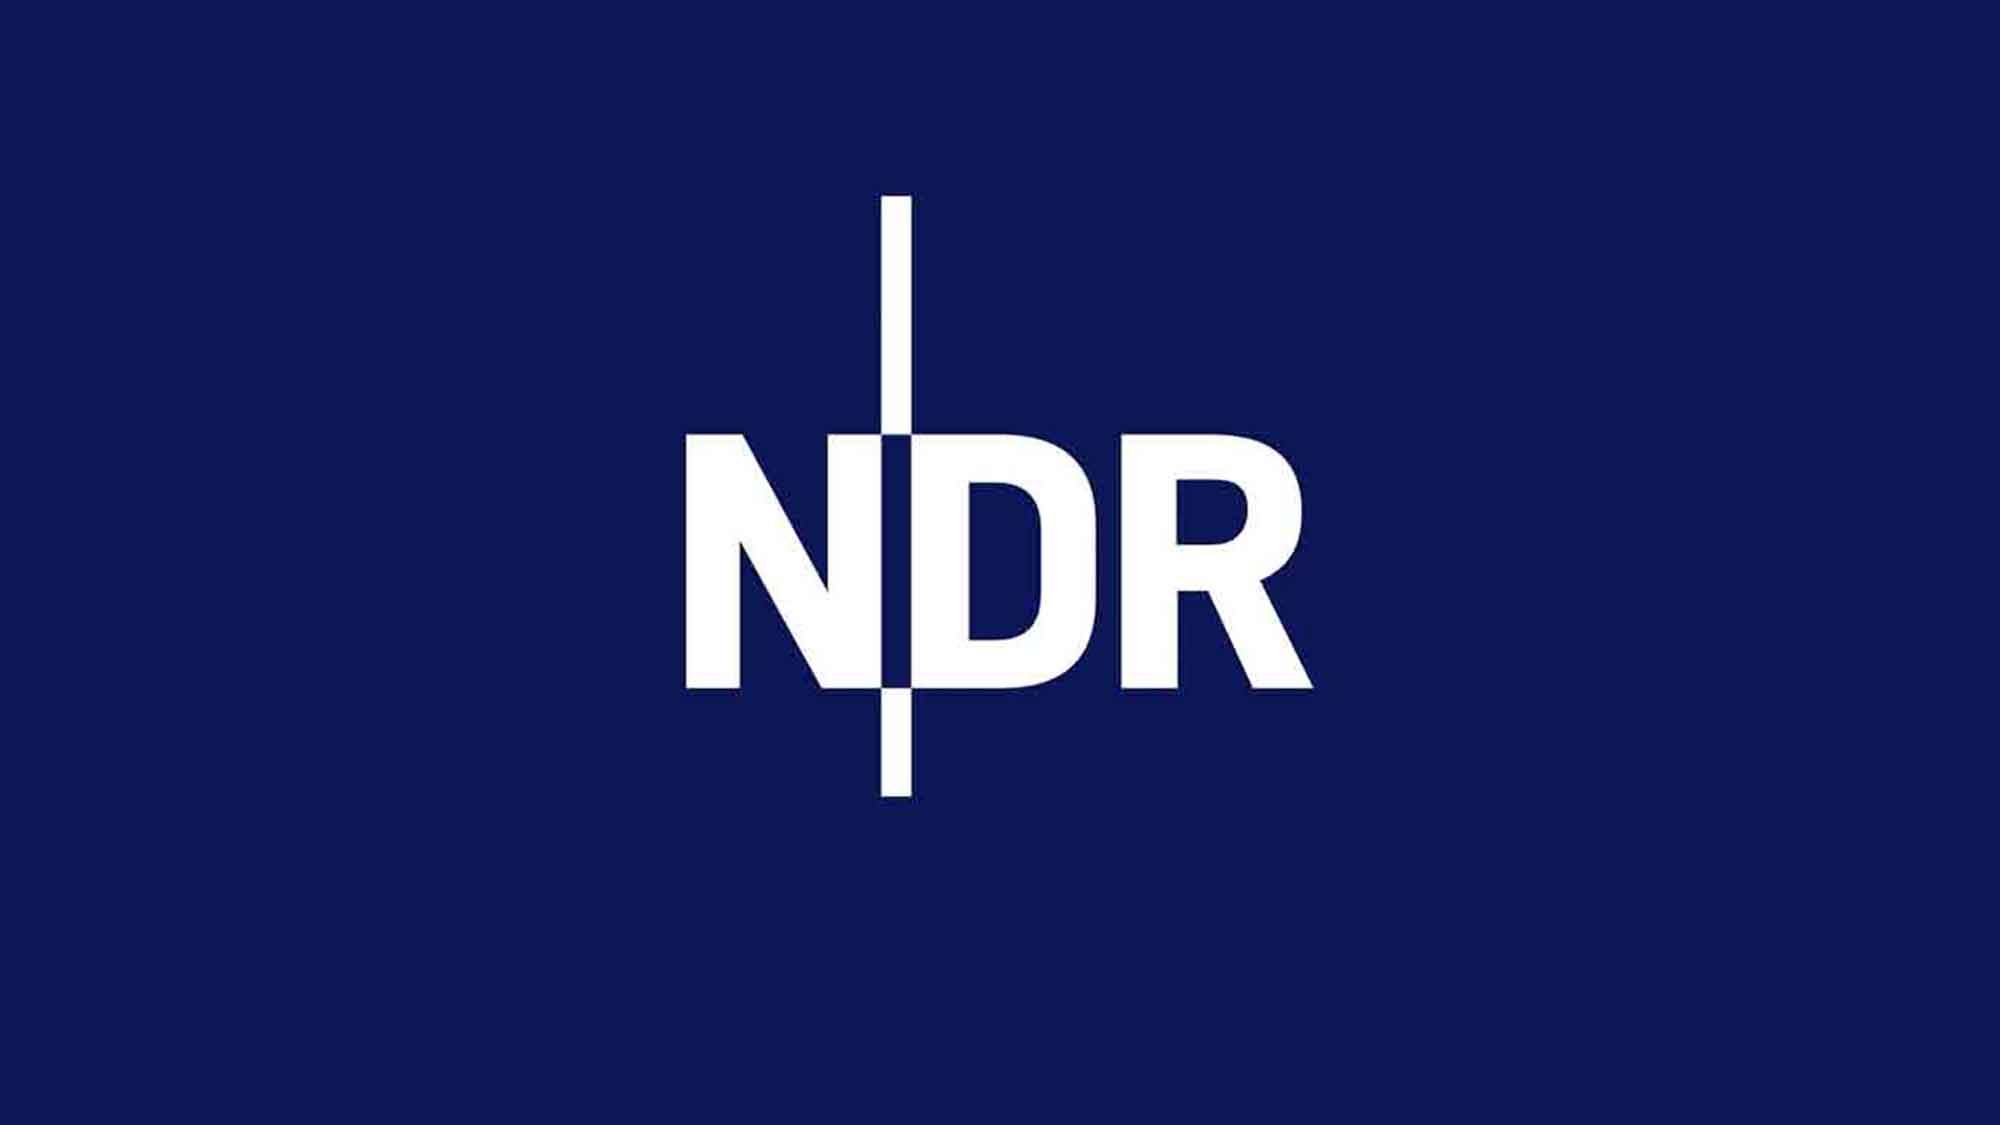 NDR Umfrage: Rot »Grün« ohne Mehrheit in Niedersachsen